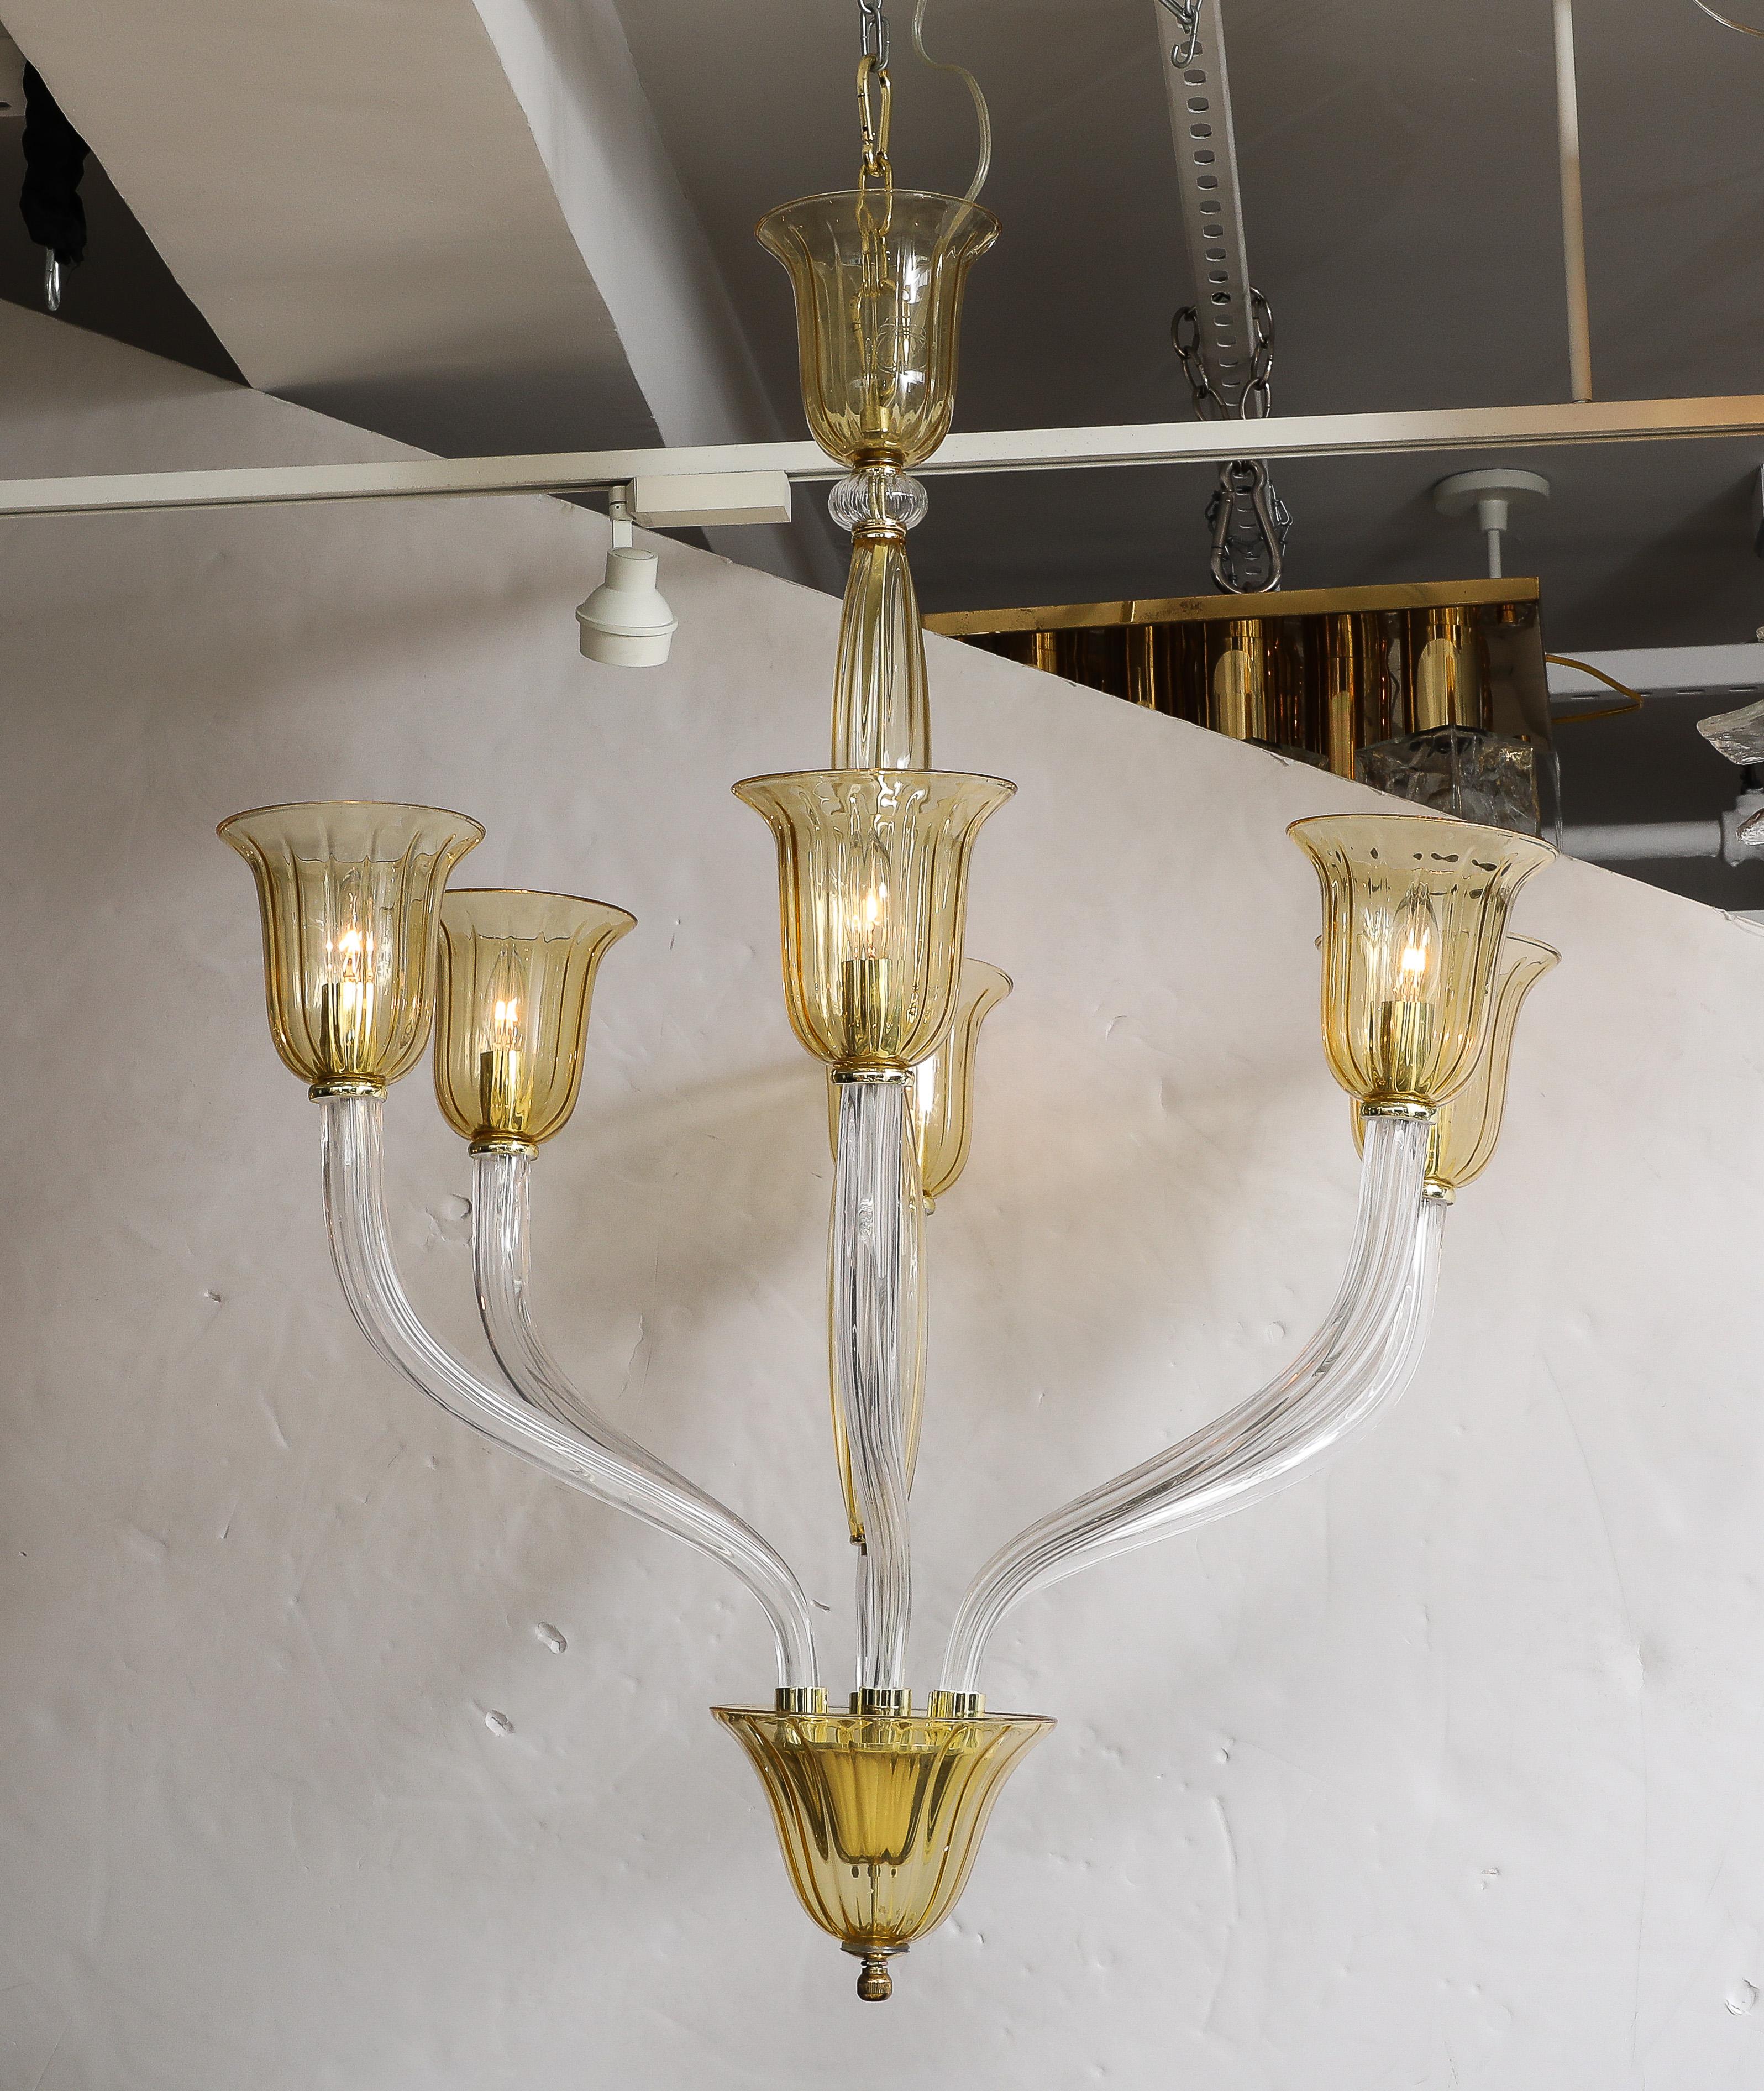 Lustre à 6 bras en verre d'art de Murano soufflé à la main avec des bras cannelés clairs et des accents en verre ambré/miel. Câblée pour une utilisation aux États-Unis, elle utilise des ampoules de type candélabre de 15 à 40 W. 